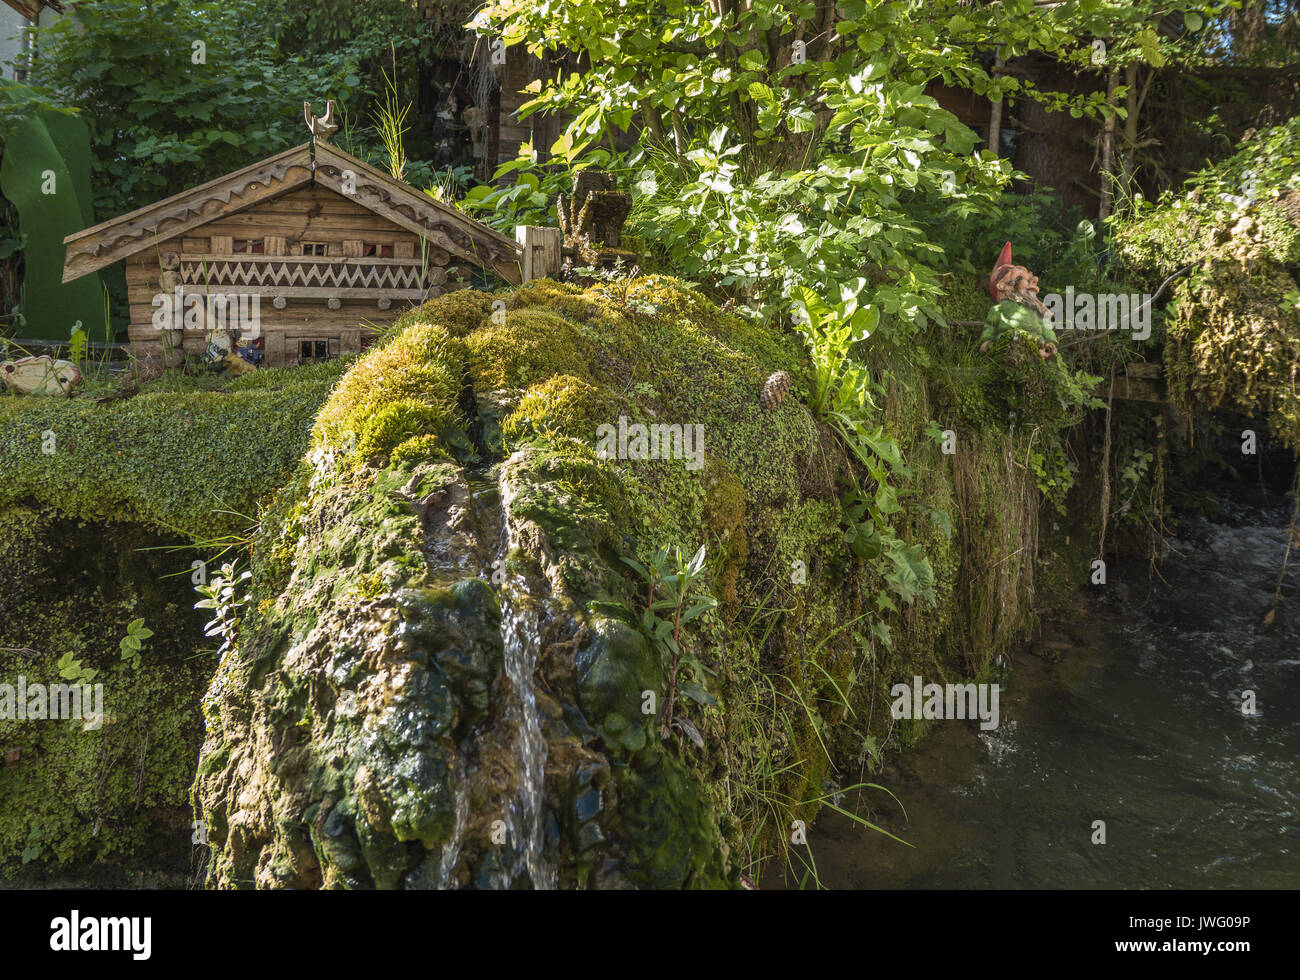 Gartenanlage mit kleinem Häuschen und Wasserfall in Diessen am Ammersee, Bayern, Deutschland, Europa Stock Photo